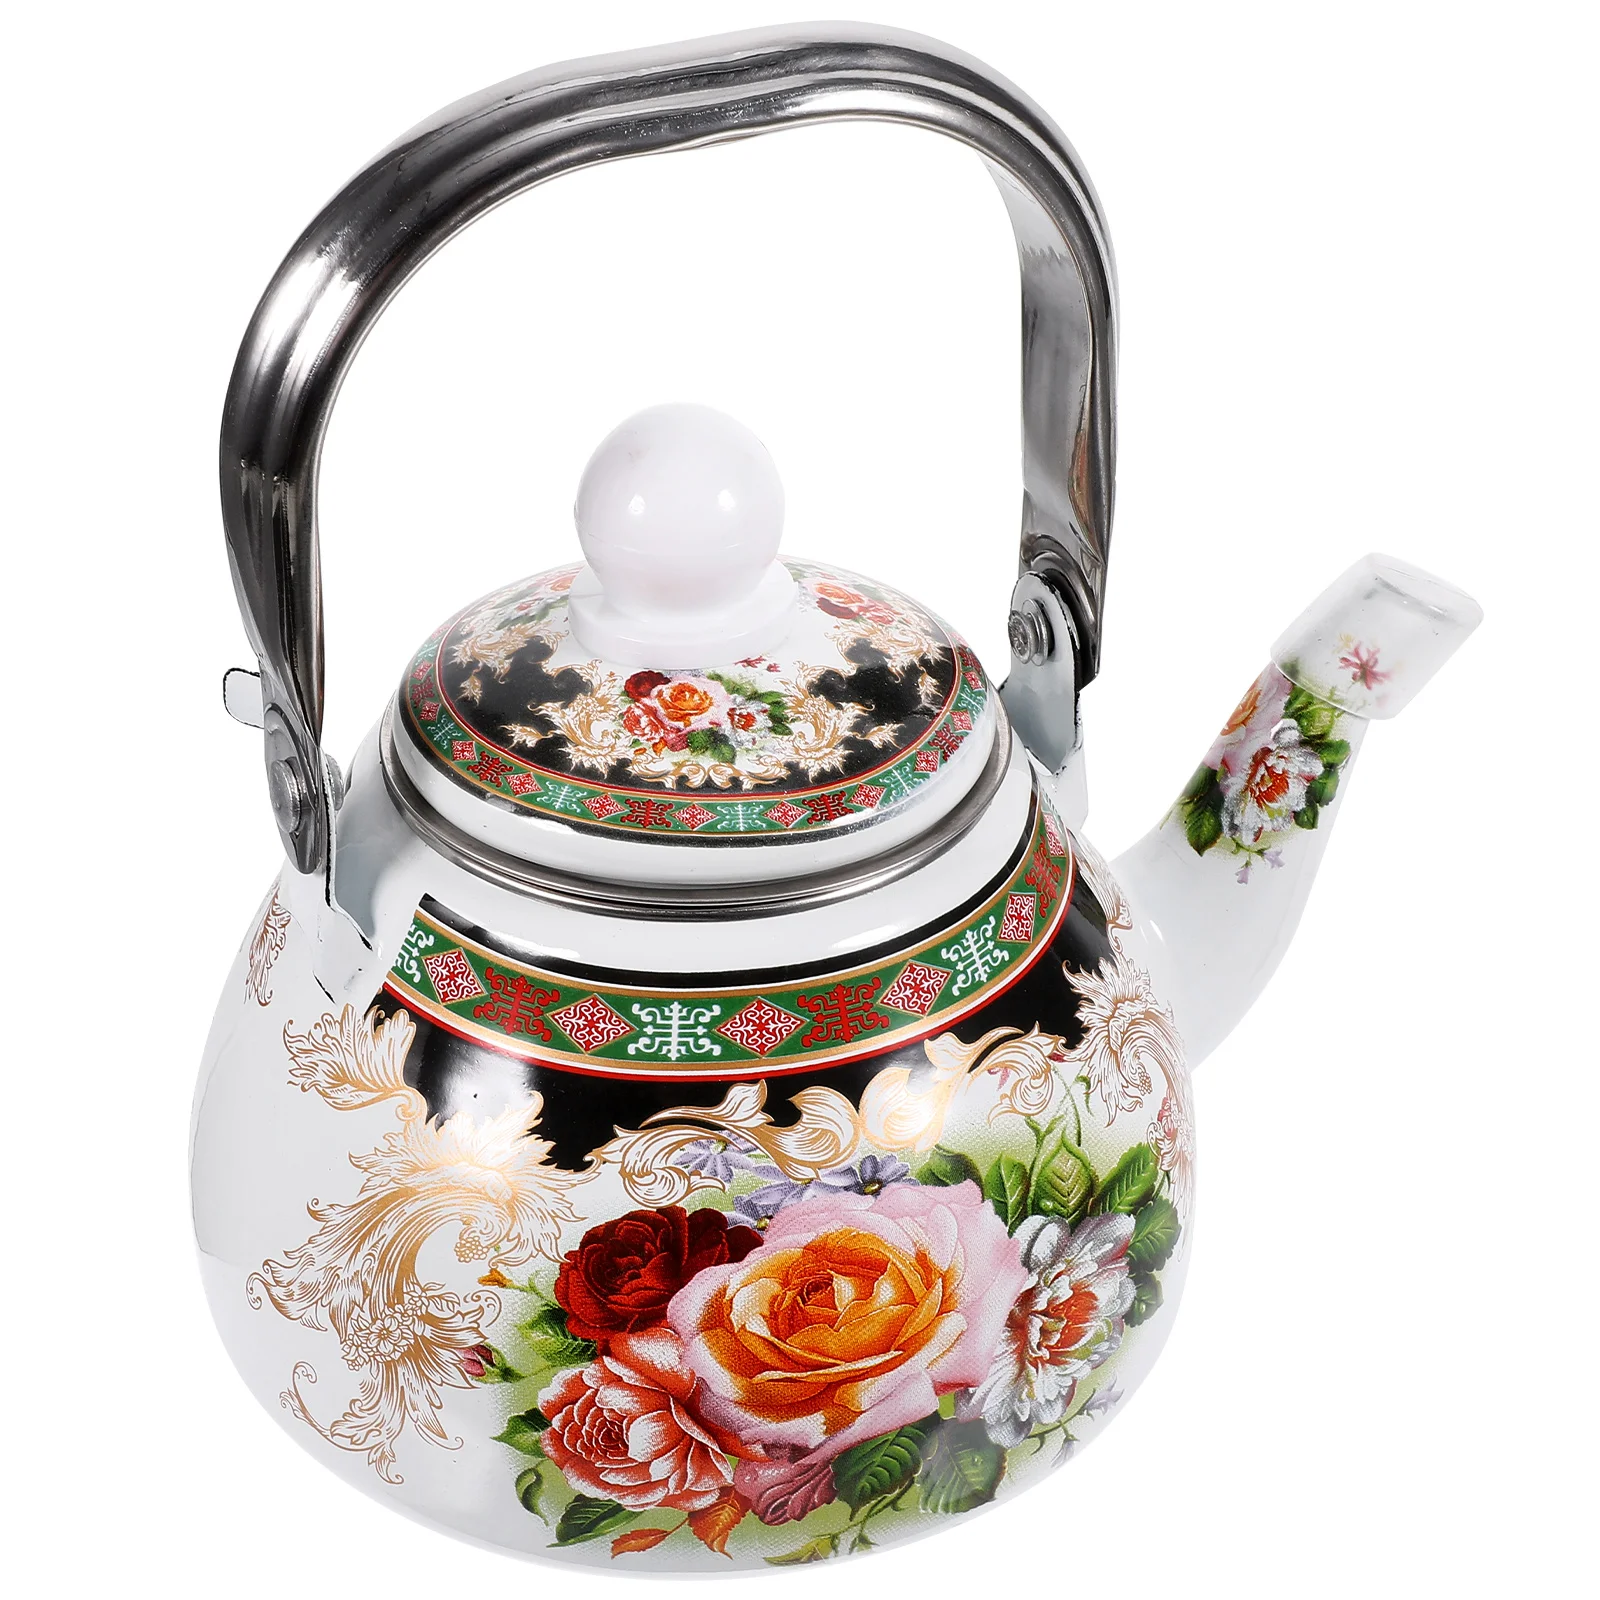 

Чайник горшки Плита Топ японский стиль эмаль чайник для воды чайники сервировочный чайник Kungfu